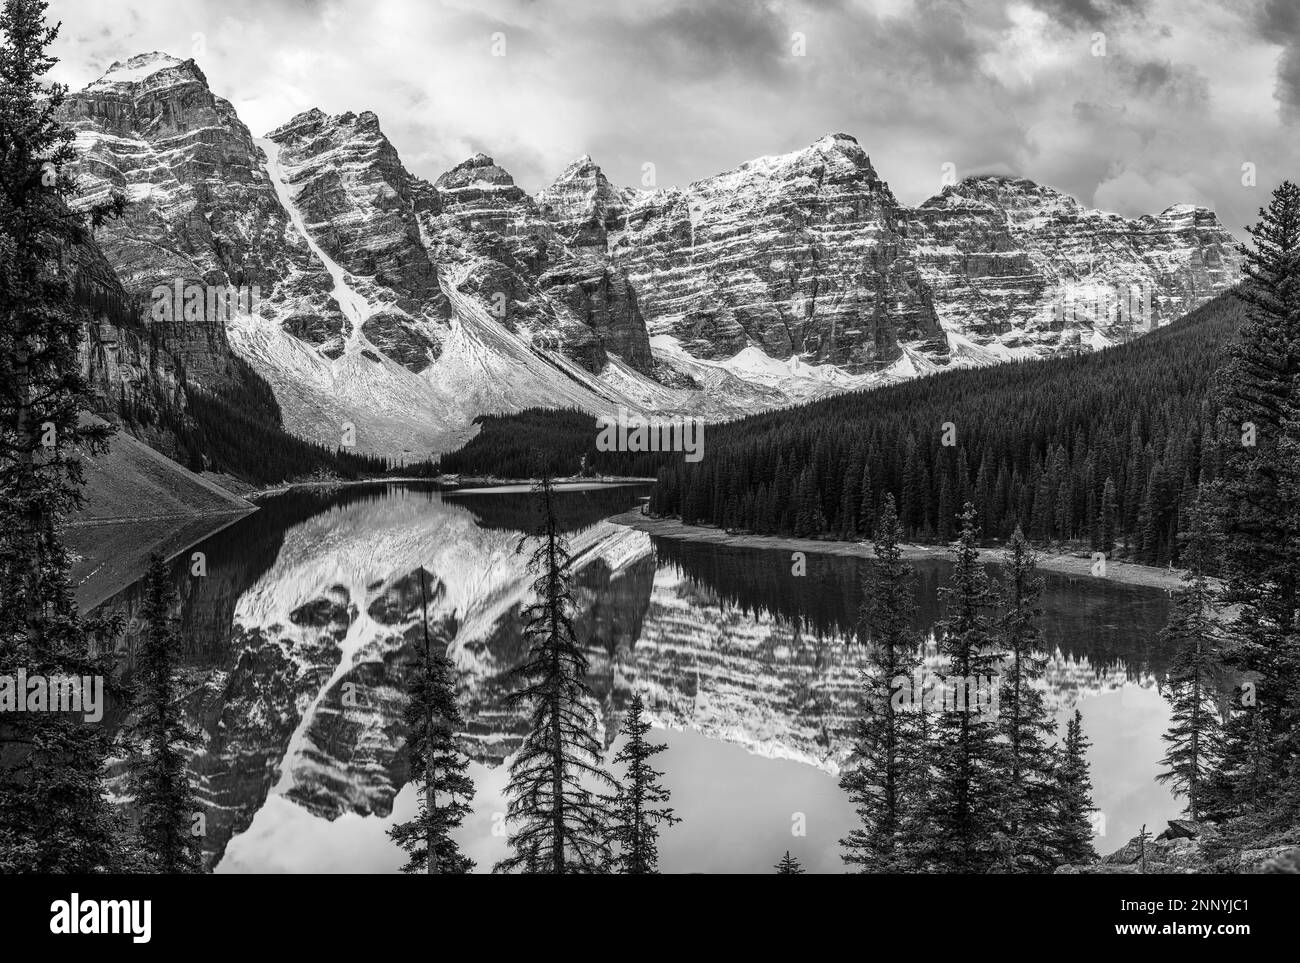 Paysage avec lac et chaîne de montagnes, lac Moraine, vallée des dix pics, Alberta, Canada Banque D'Images